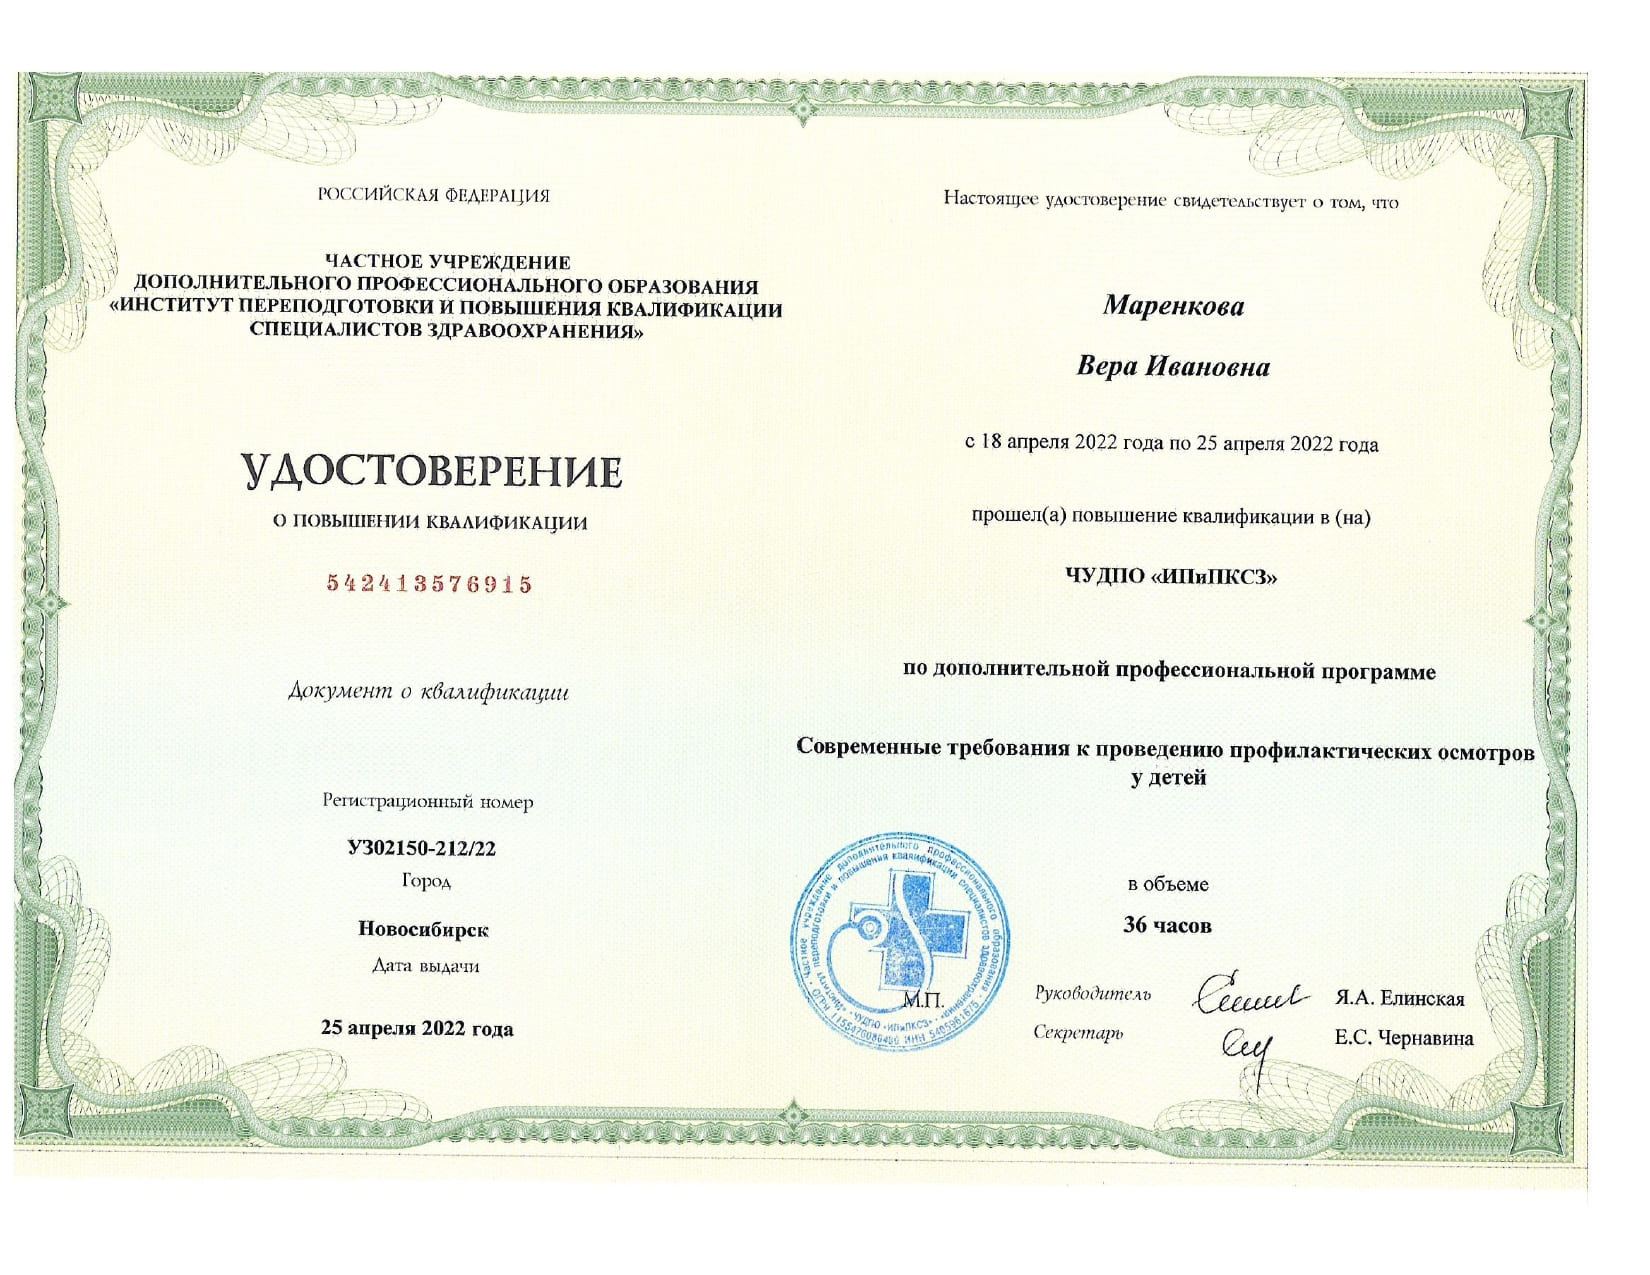 Сертификат прохождения 3 page 0001